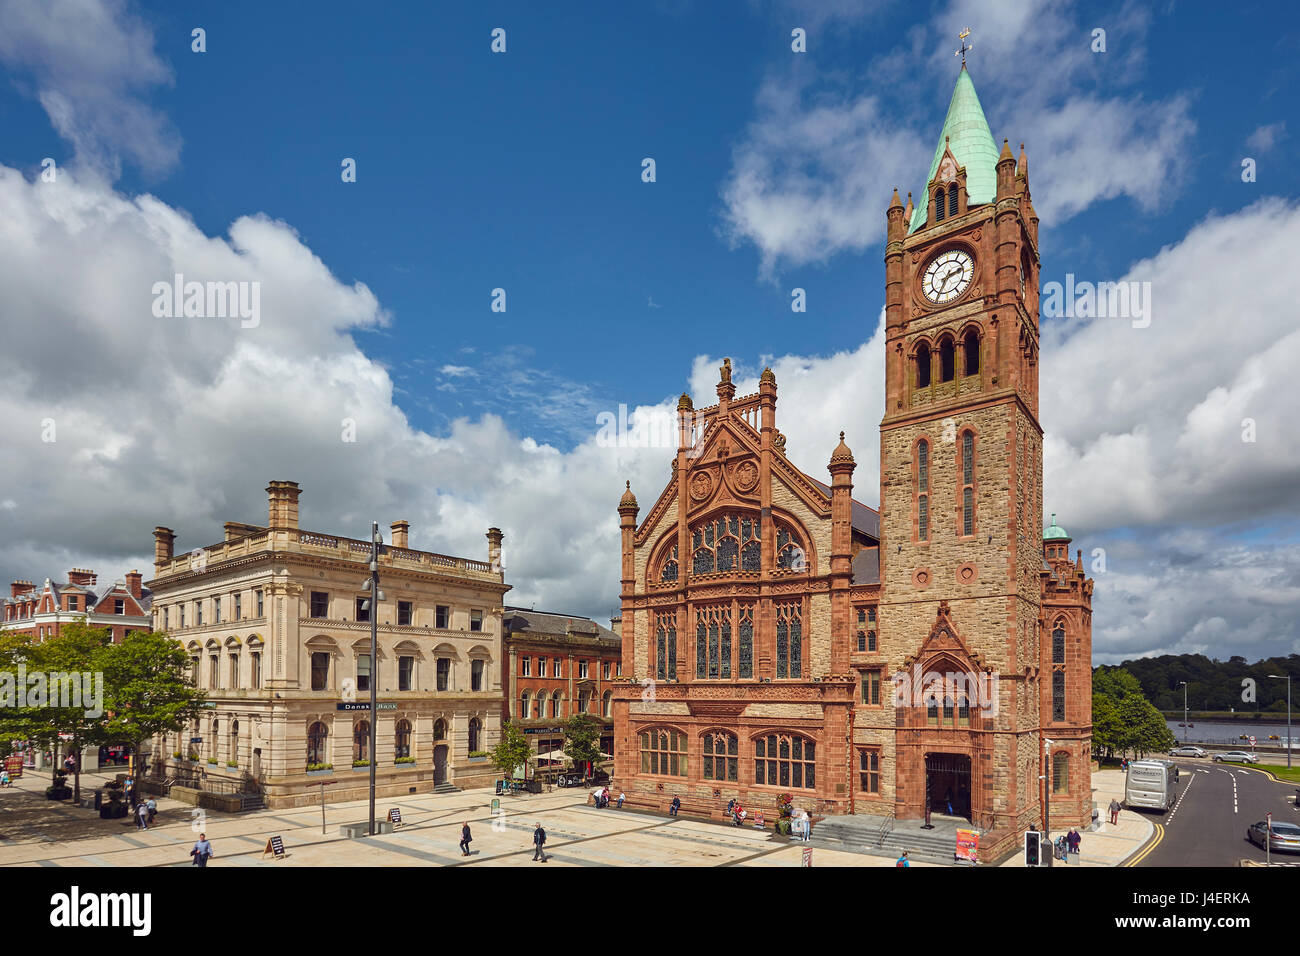 Die Guildhall, Derry (Londonderry), County Londonderry, Ulster, Nordirland, Vereinigtes Königreich, Europa Stockfoto